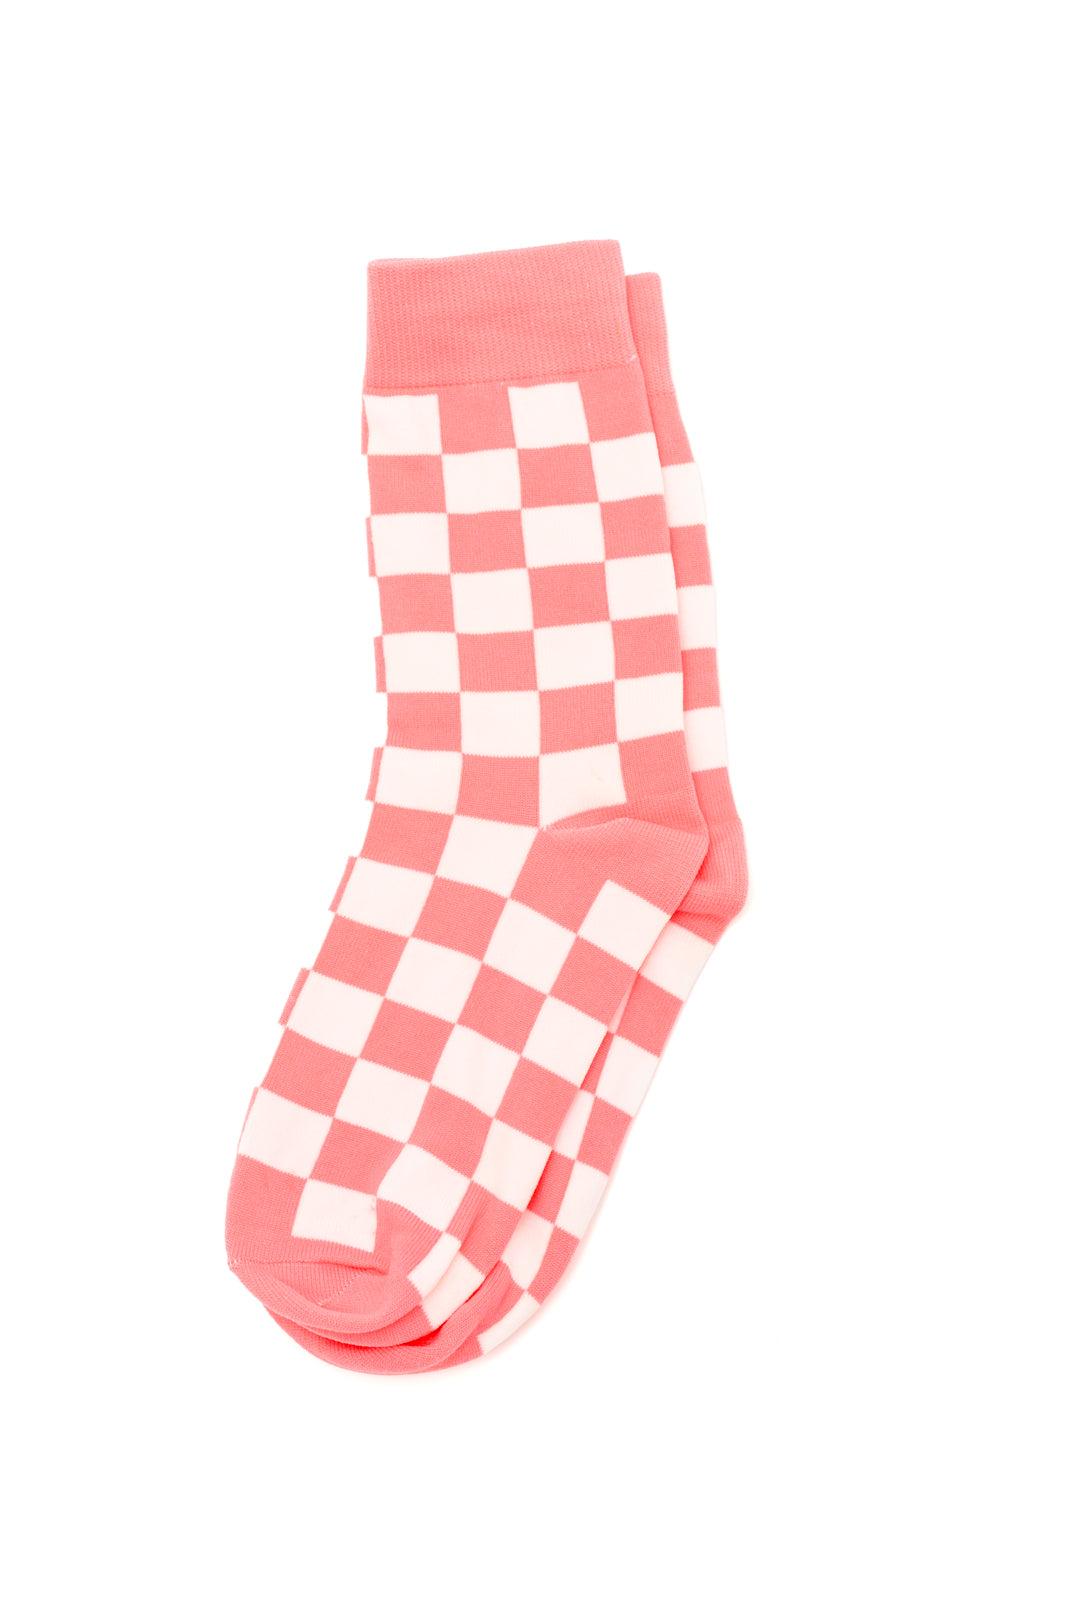 Sweet Socks Checkerboard - PEONIES & LIME